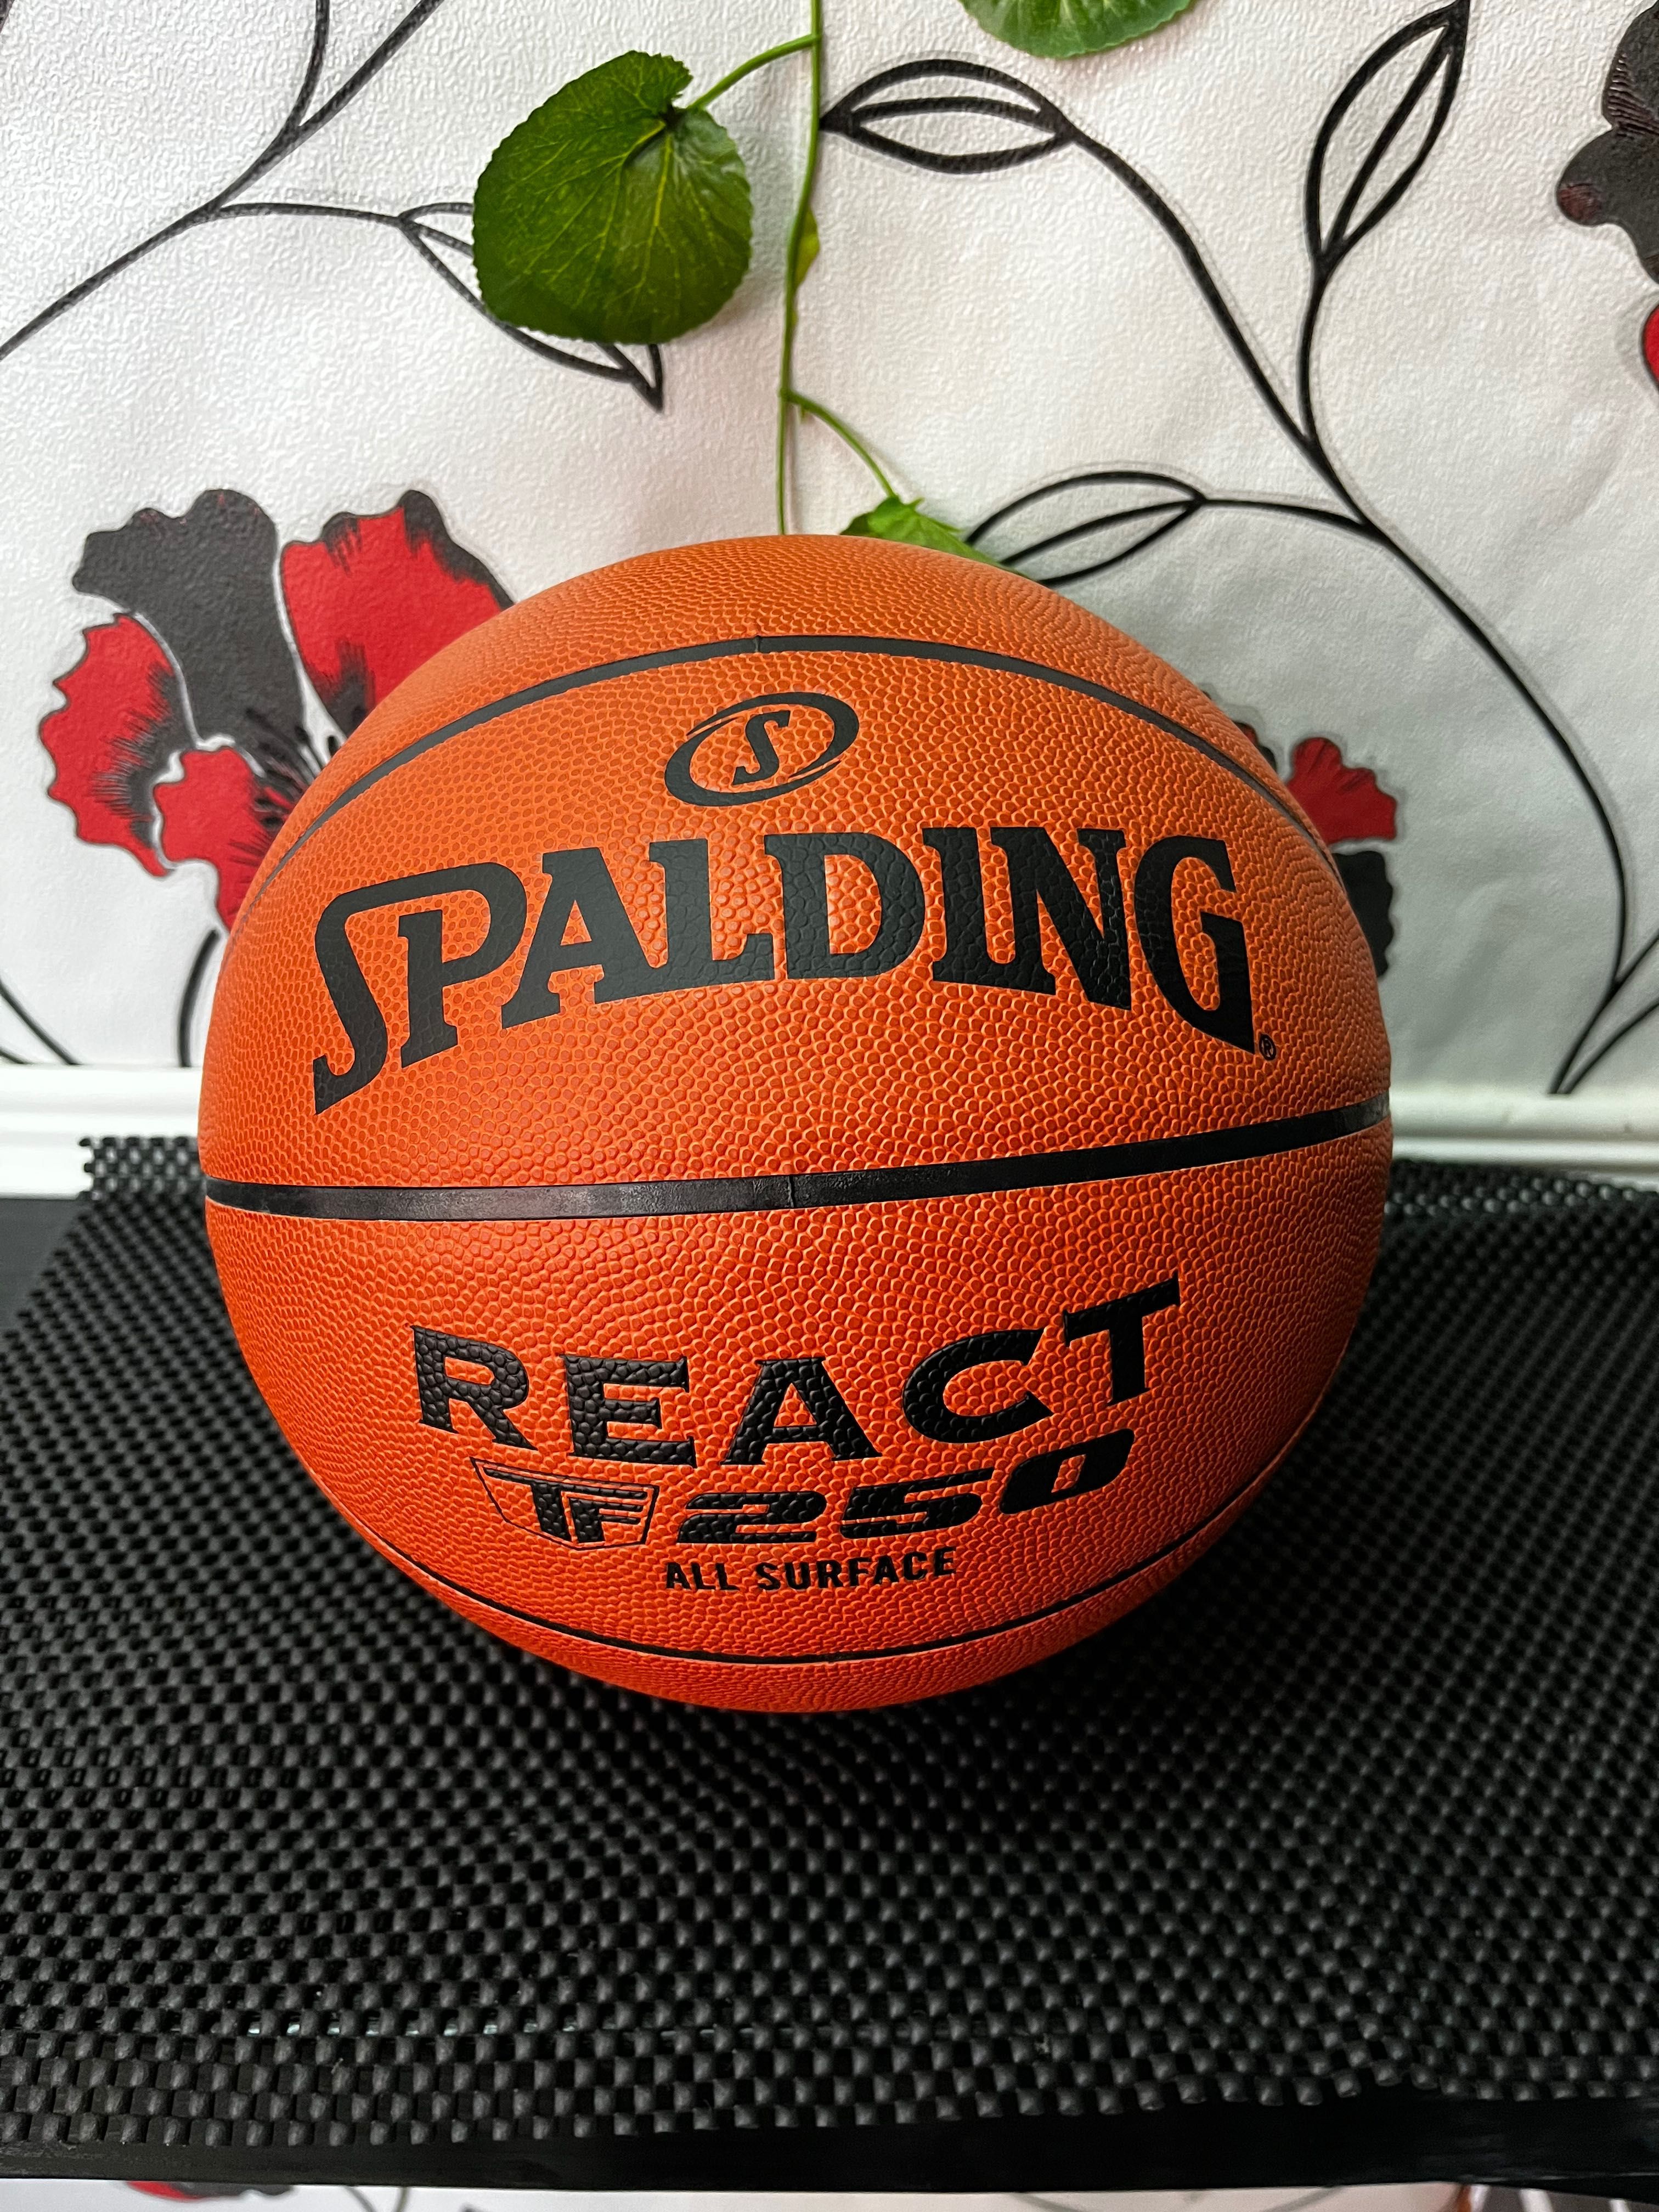 Баскетболна топка Spalding размер 7